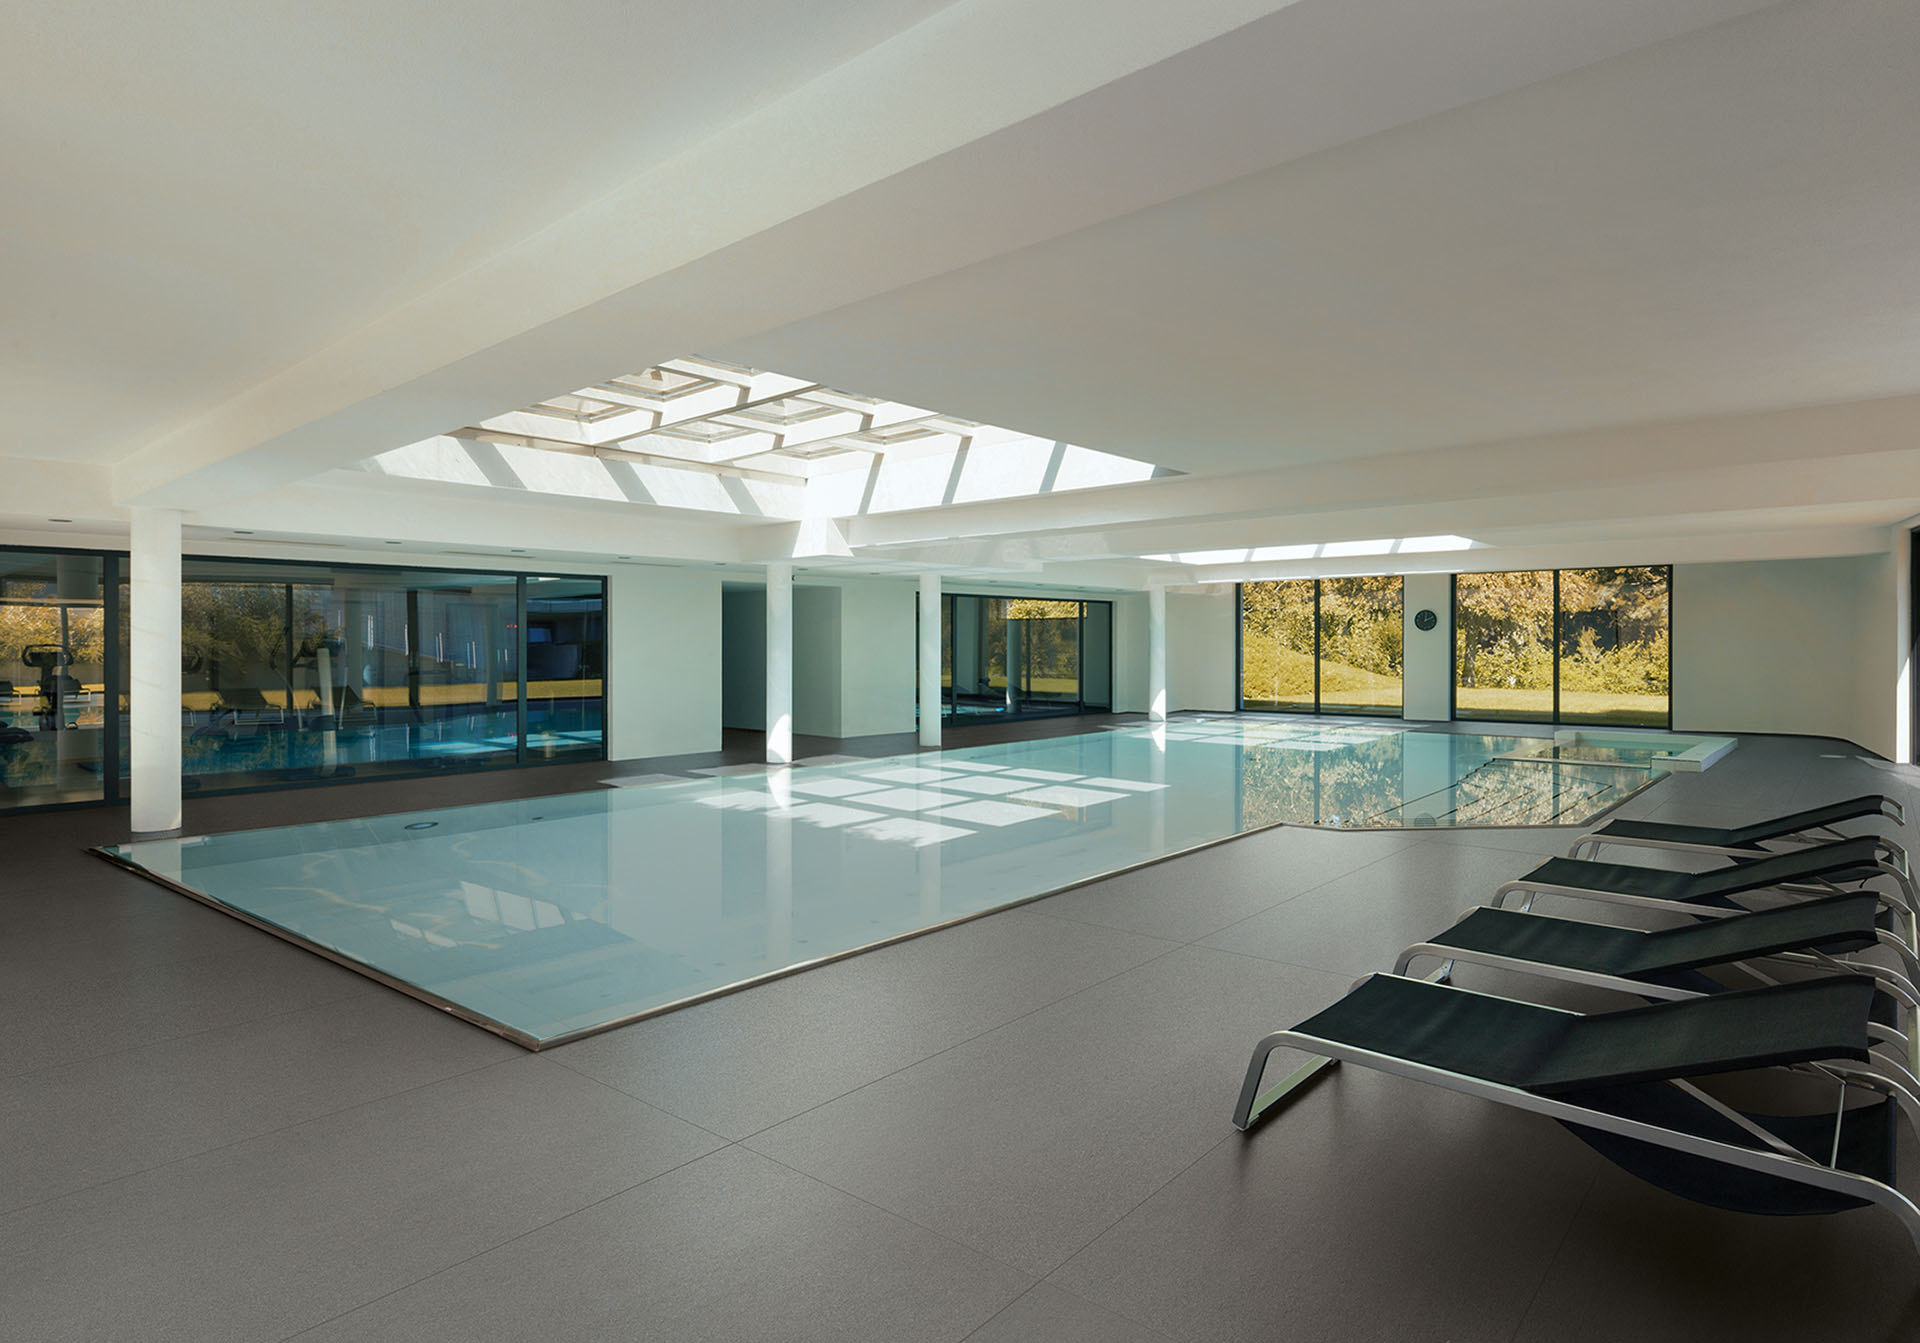 Immagine per la galleria della serie basalto. Si tratta di una piscina interna con pavimento realizzato con la collezione Basalto nel colore grigio